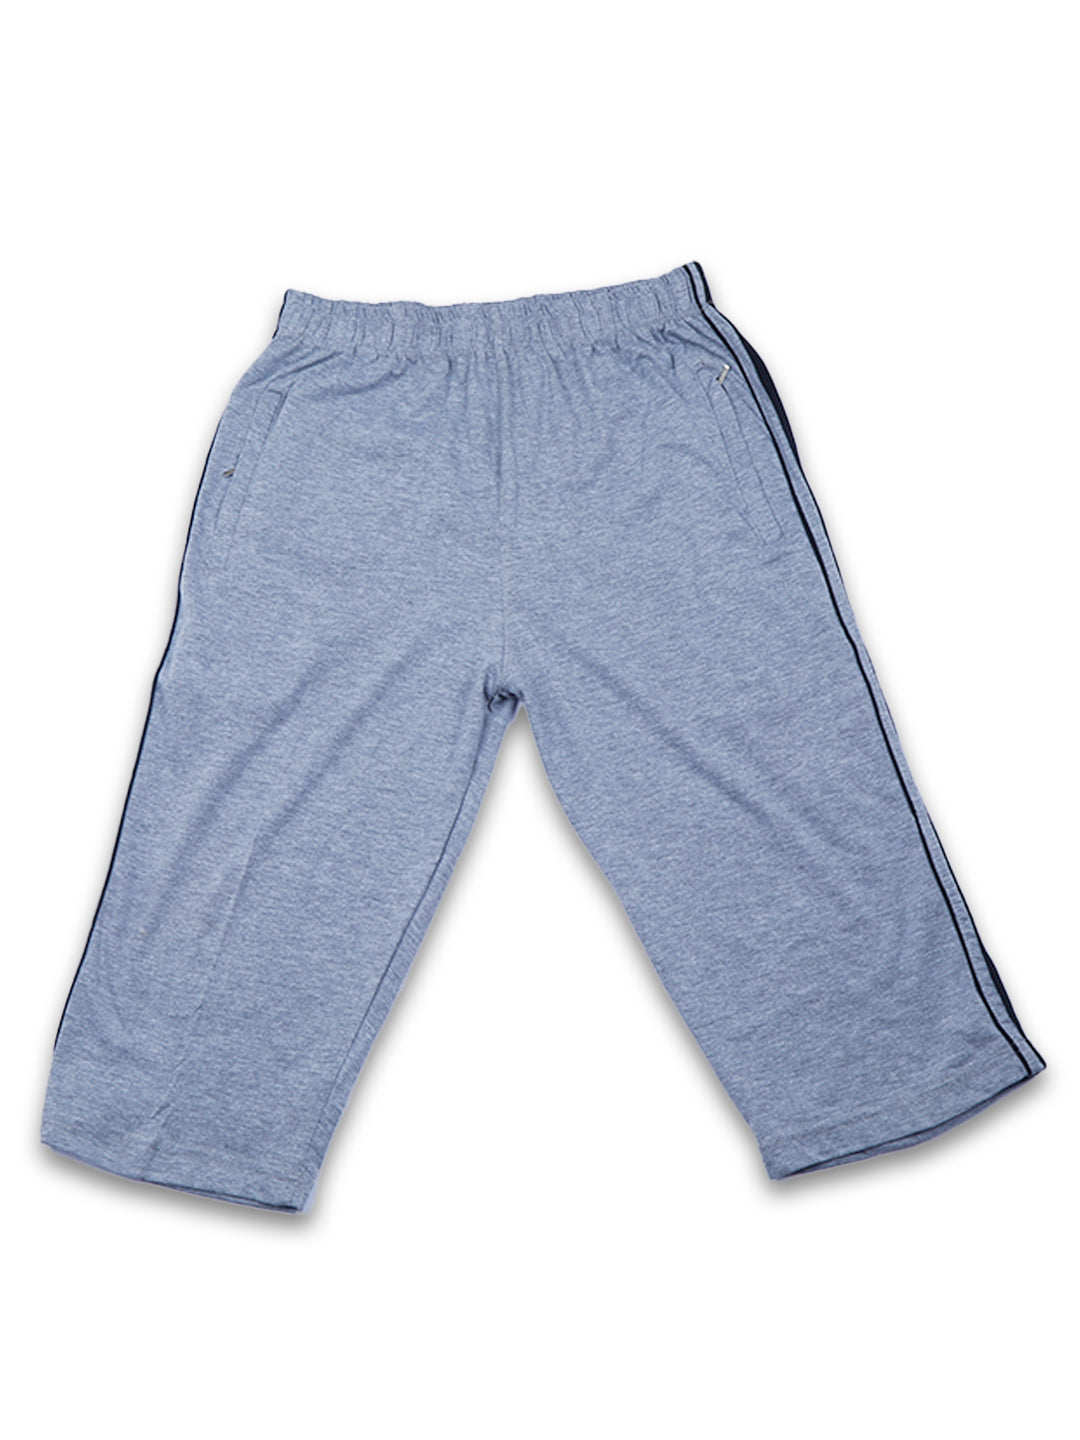 grey-mens-3/4th-shorts